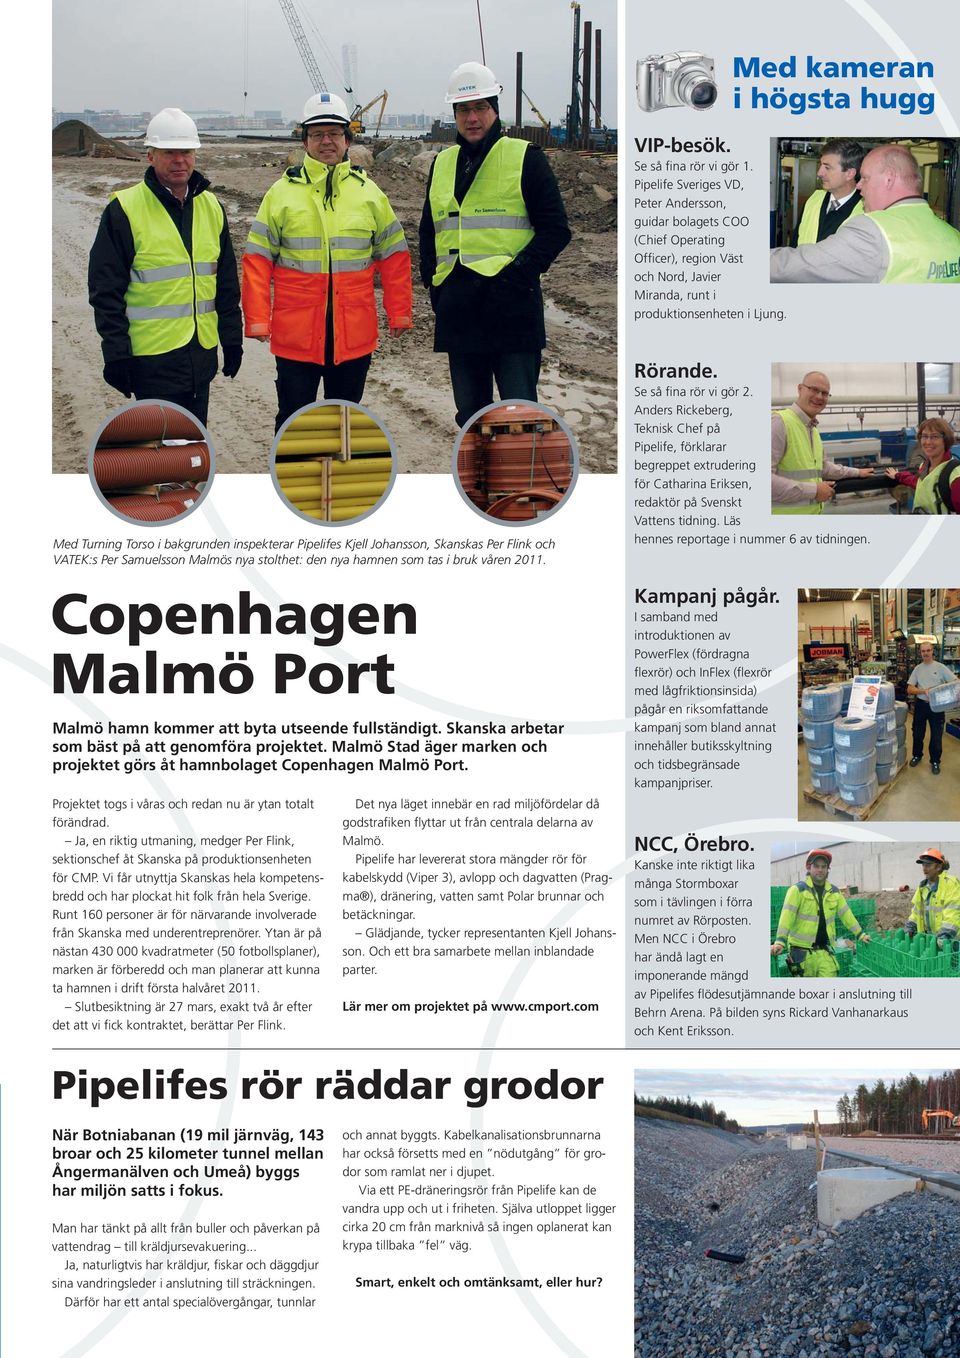 2011. Copenhagen Malmö Port Malmö hamn kommer att byta utseende fullständigt. Skanska arbetar som bäst på att genomföra projektet.